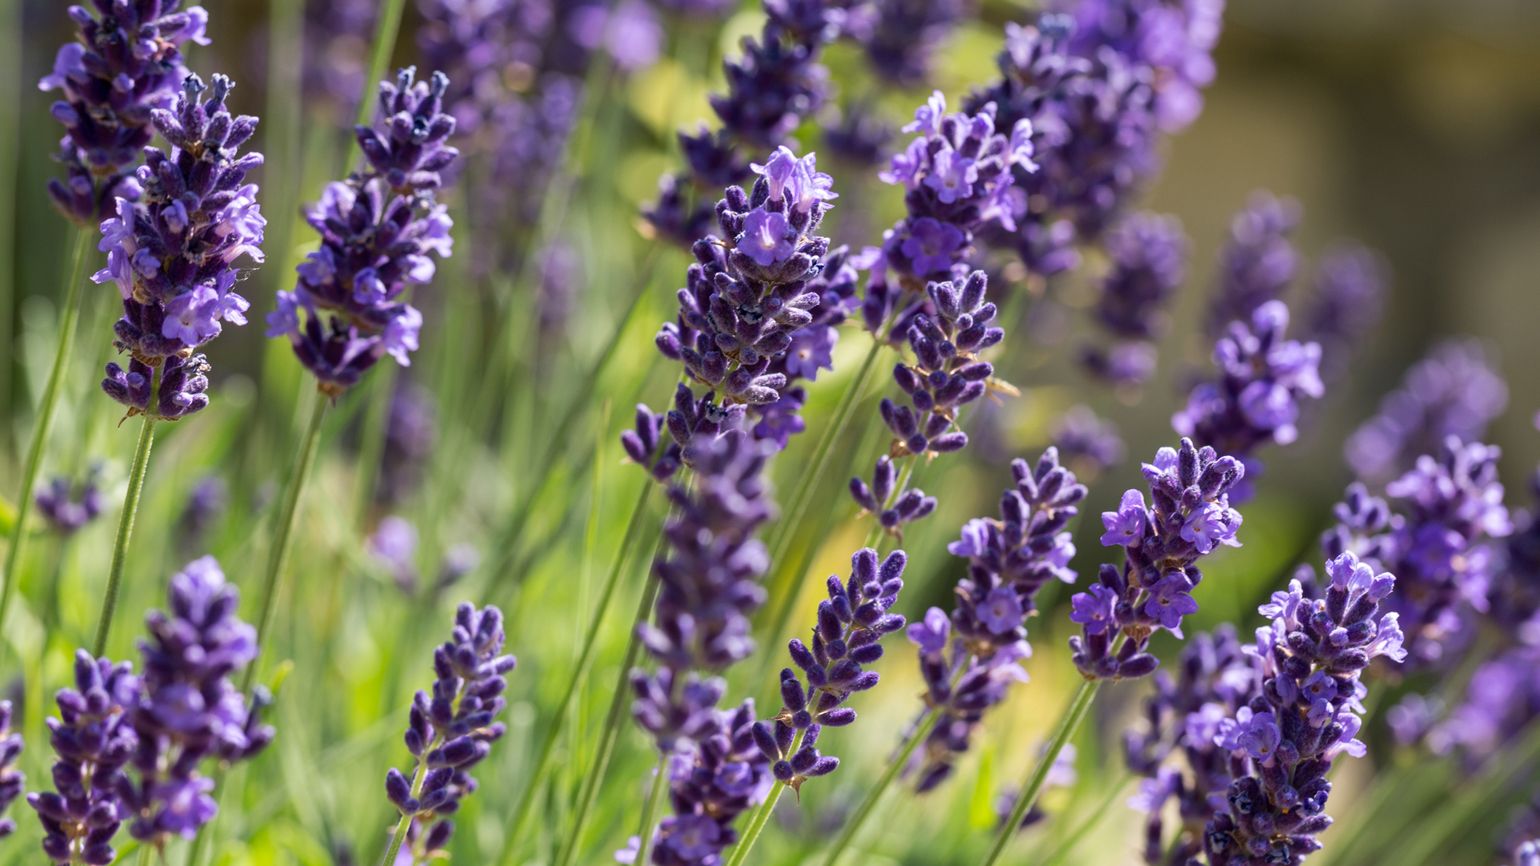 A garden full of lavender flowers.